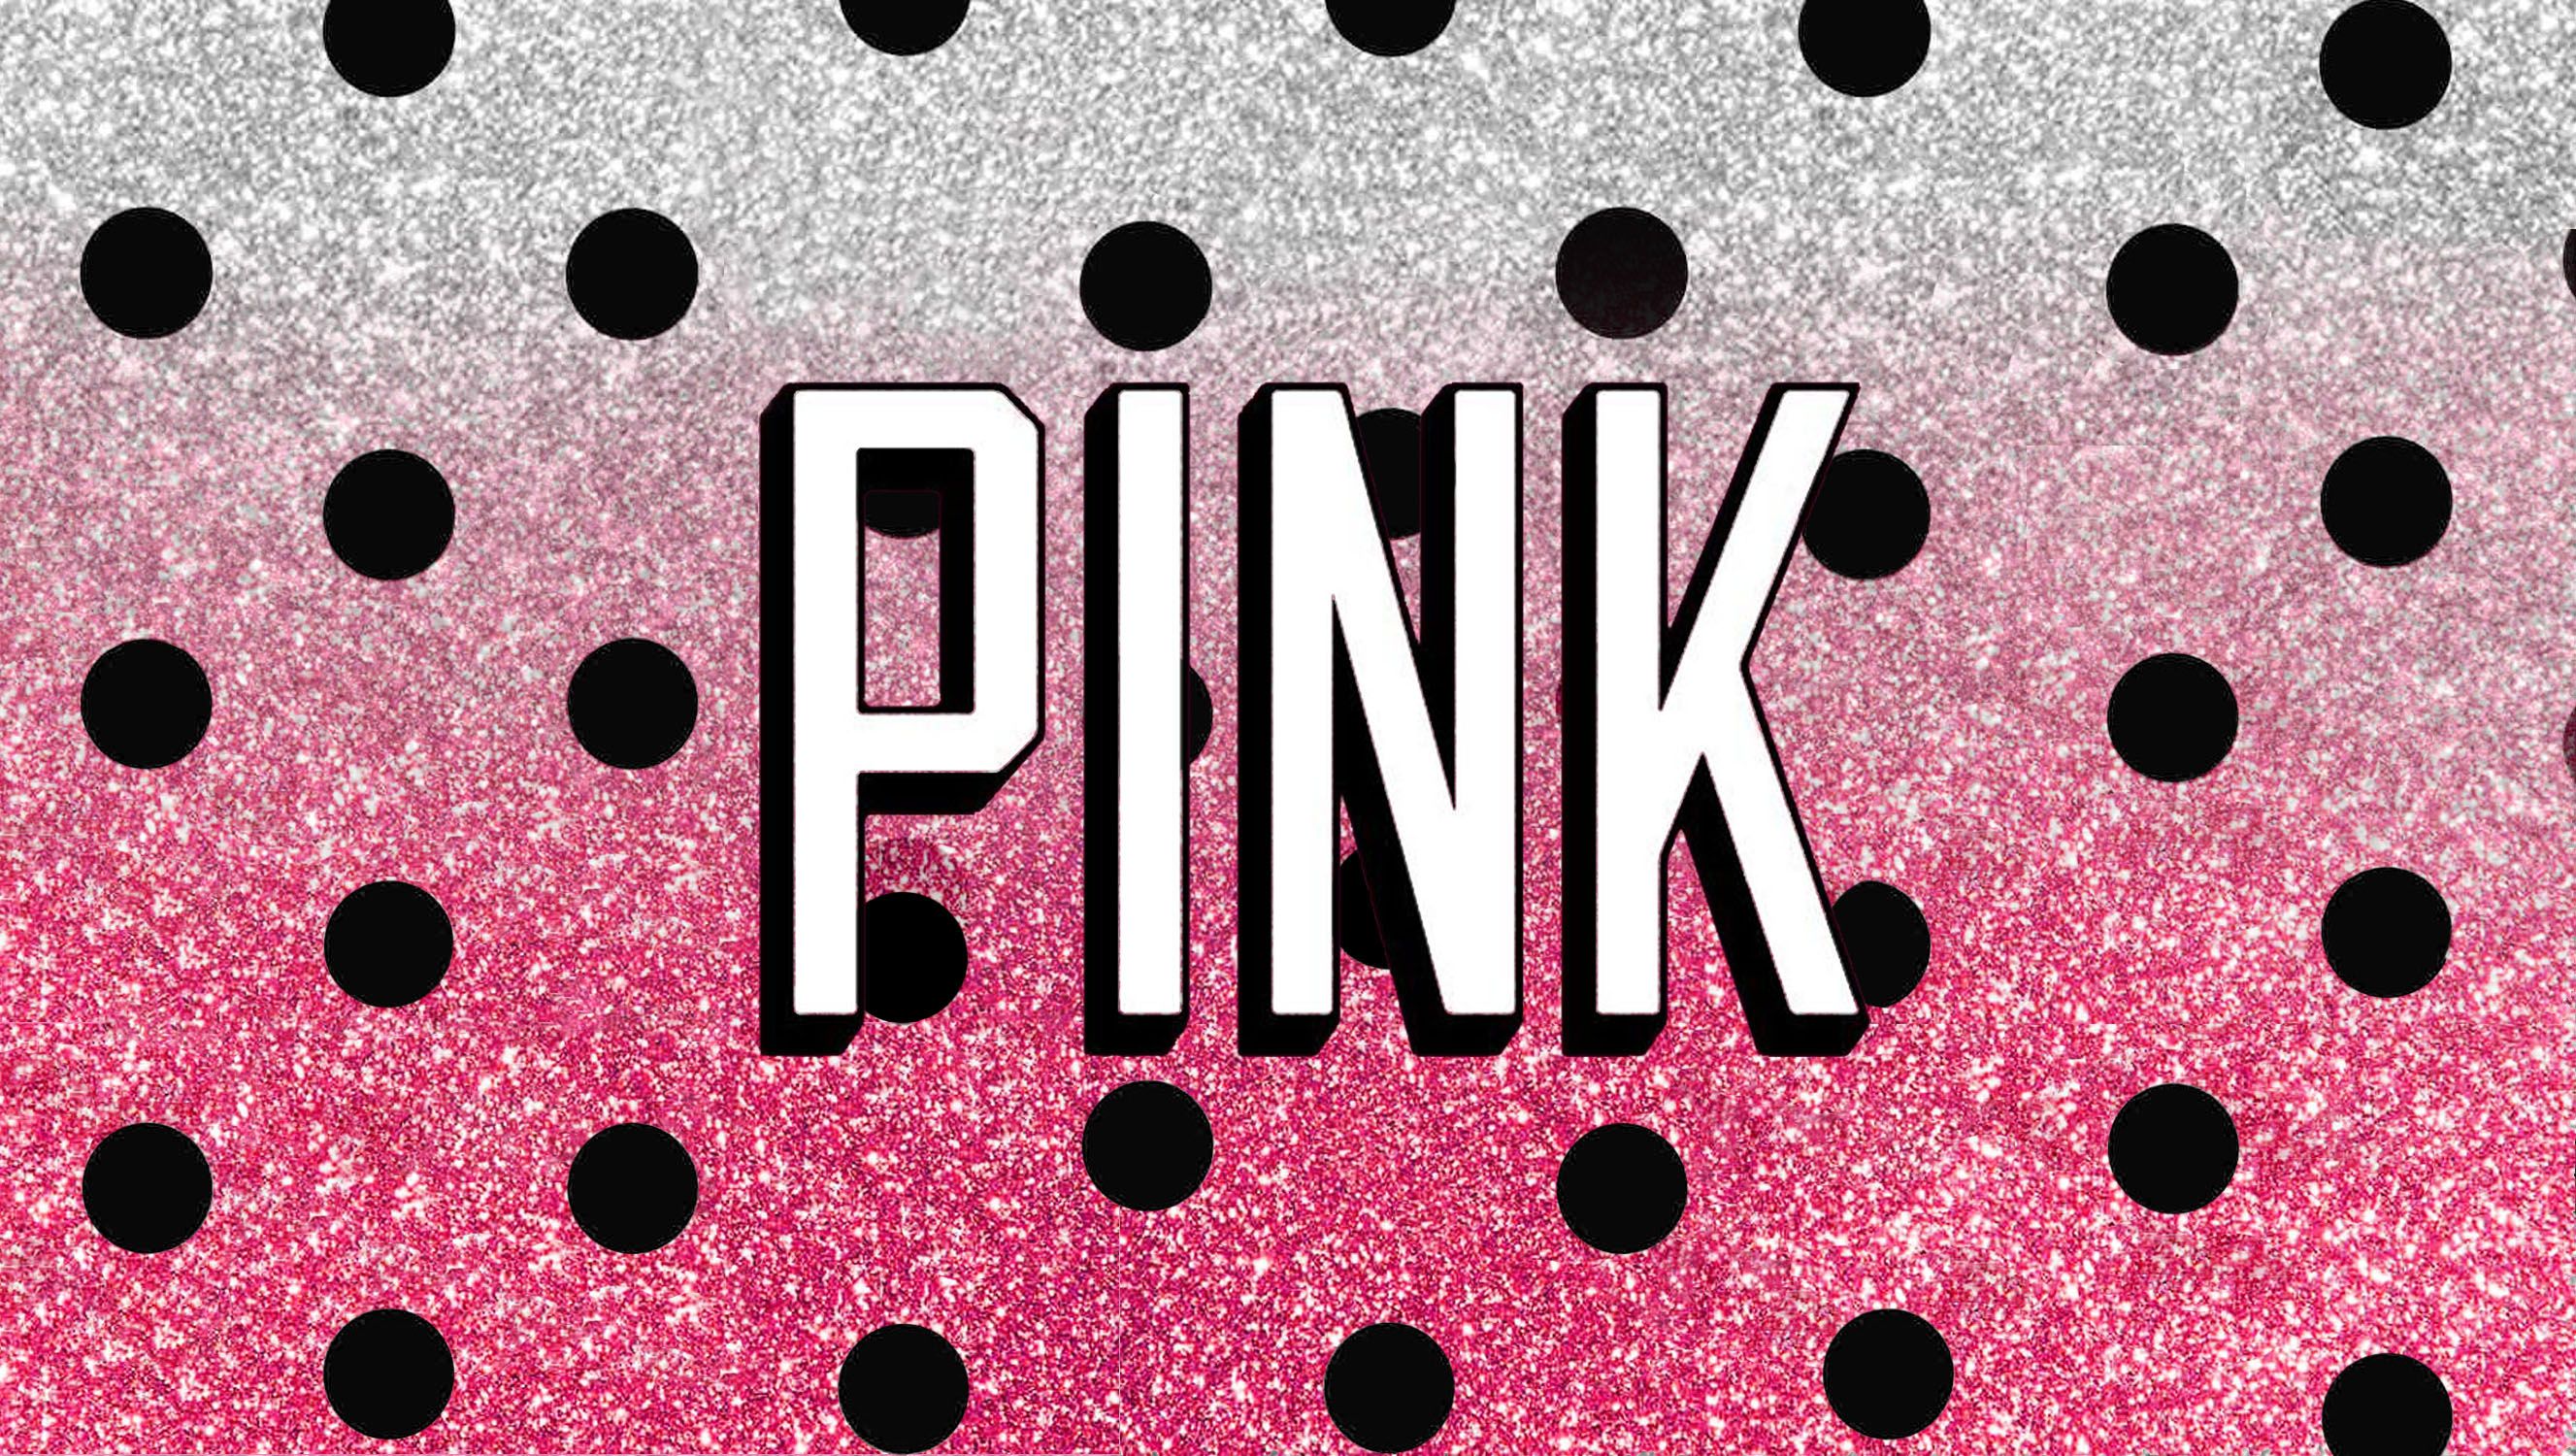 Victoria Secret Wallpaper Images - Victoria Secret Pink Wallpaper Desktop - HD Wallpaper 